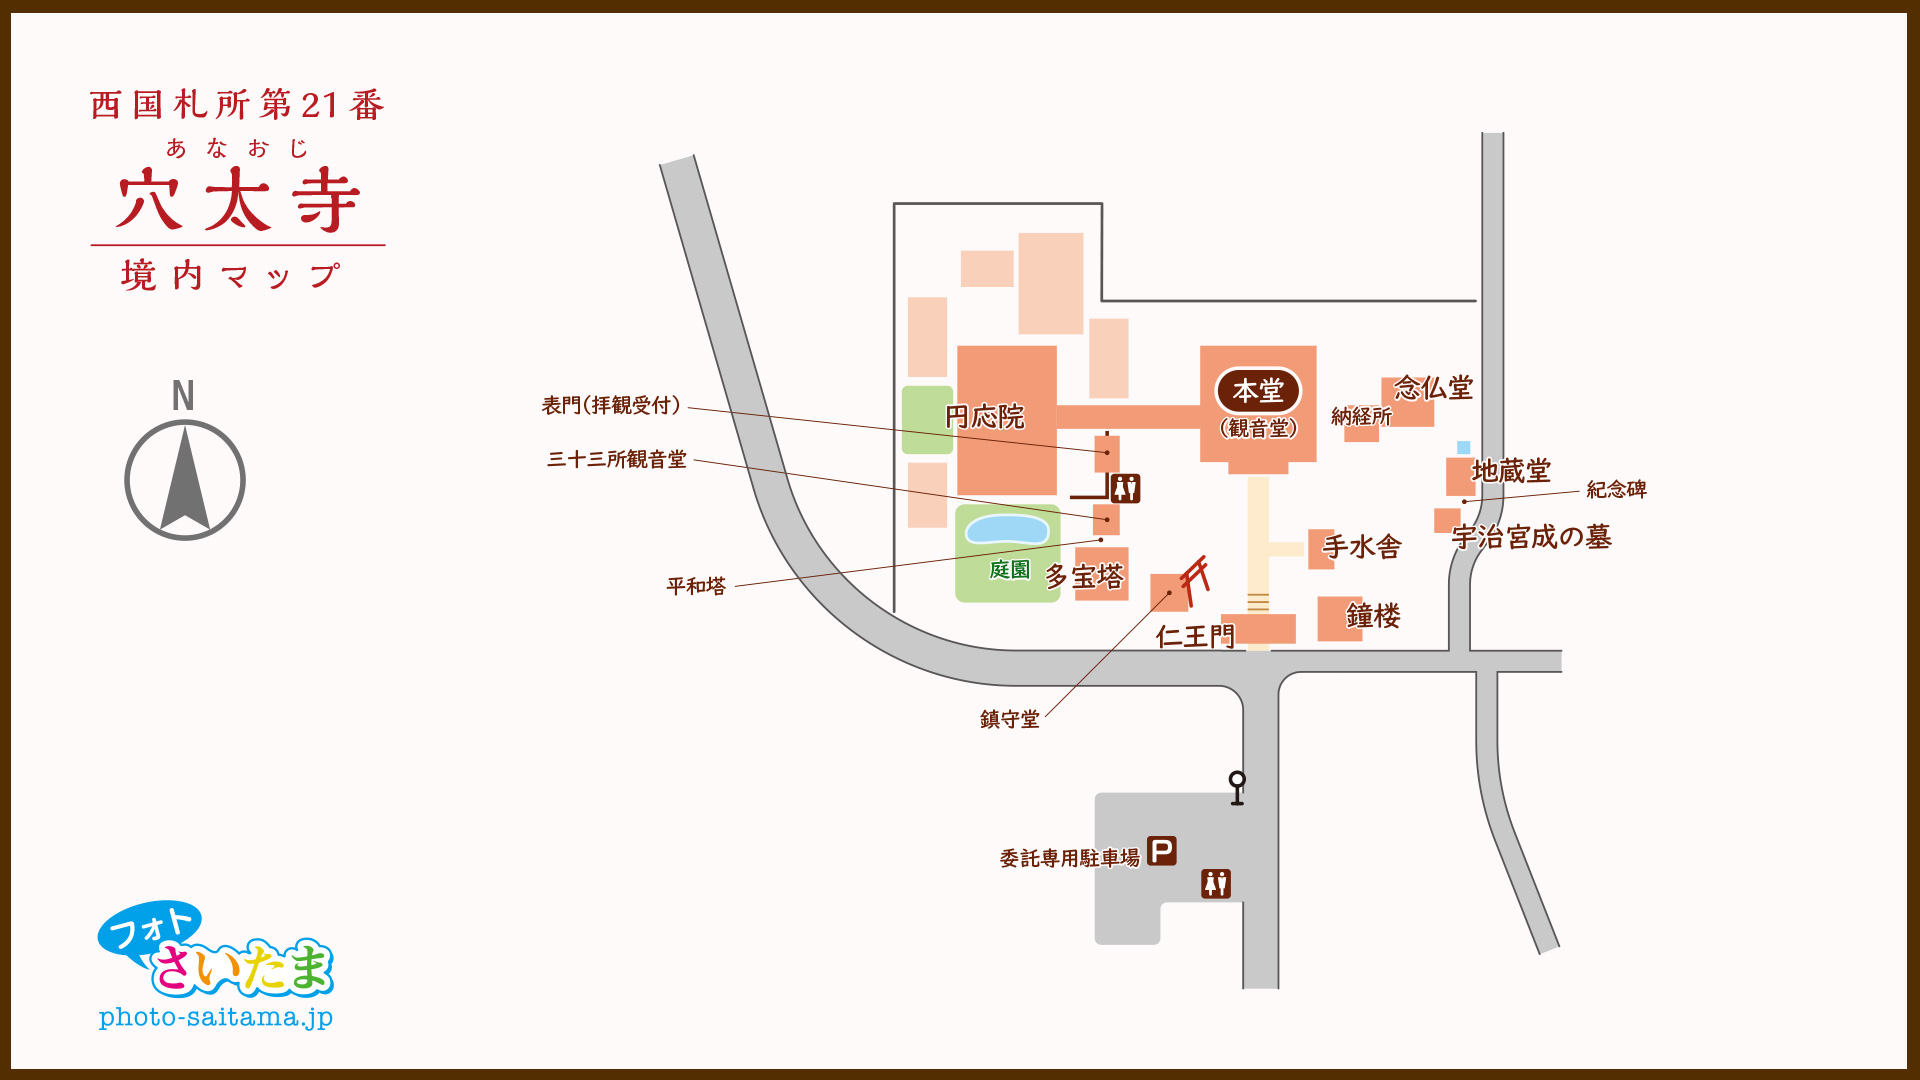 西国札所 第２１番【菩提山・穴太寺】境内マップ | フォトさいたま